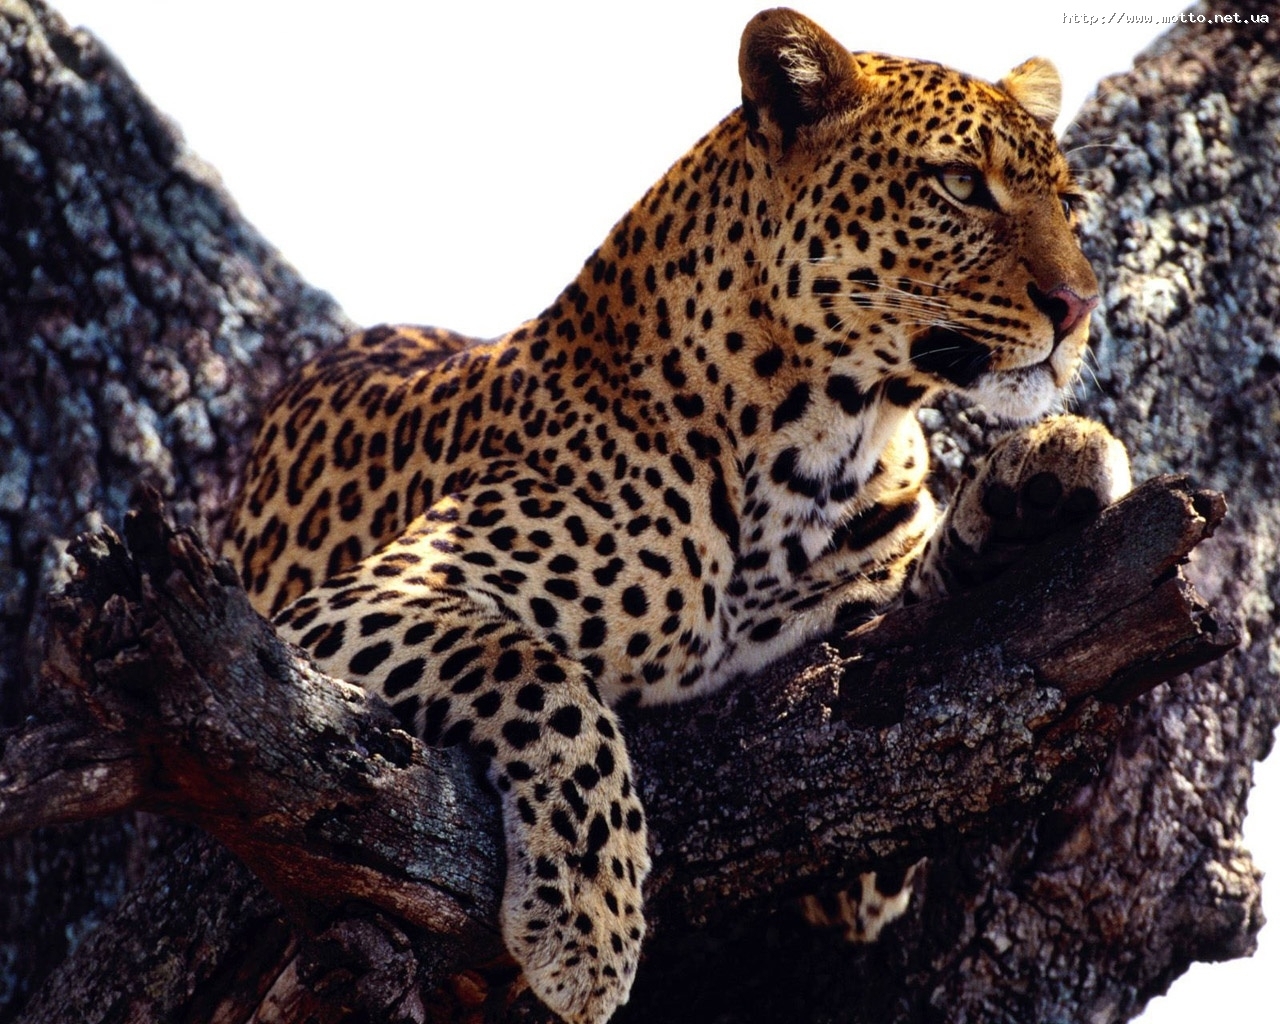 Скачать картинку Животные, Леопарды в телефон бесплатно.